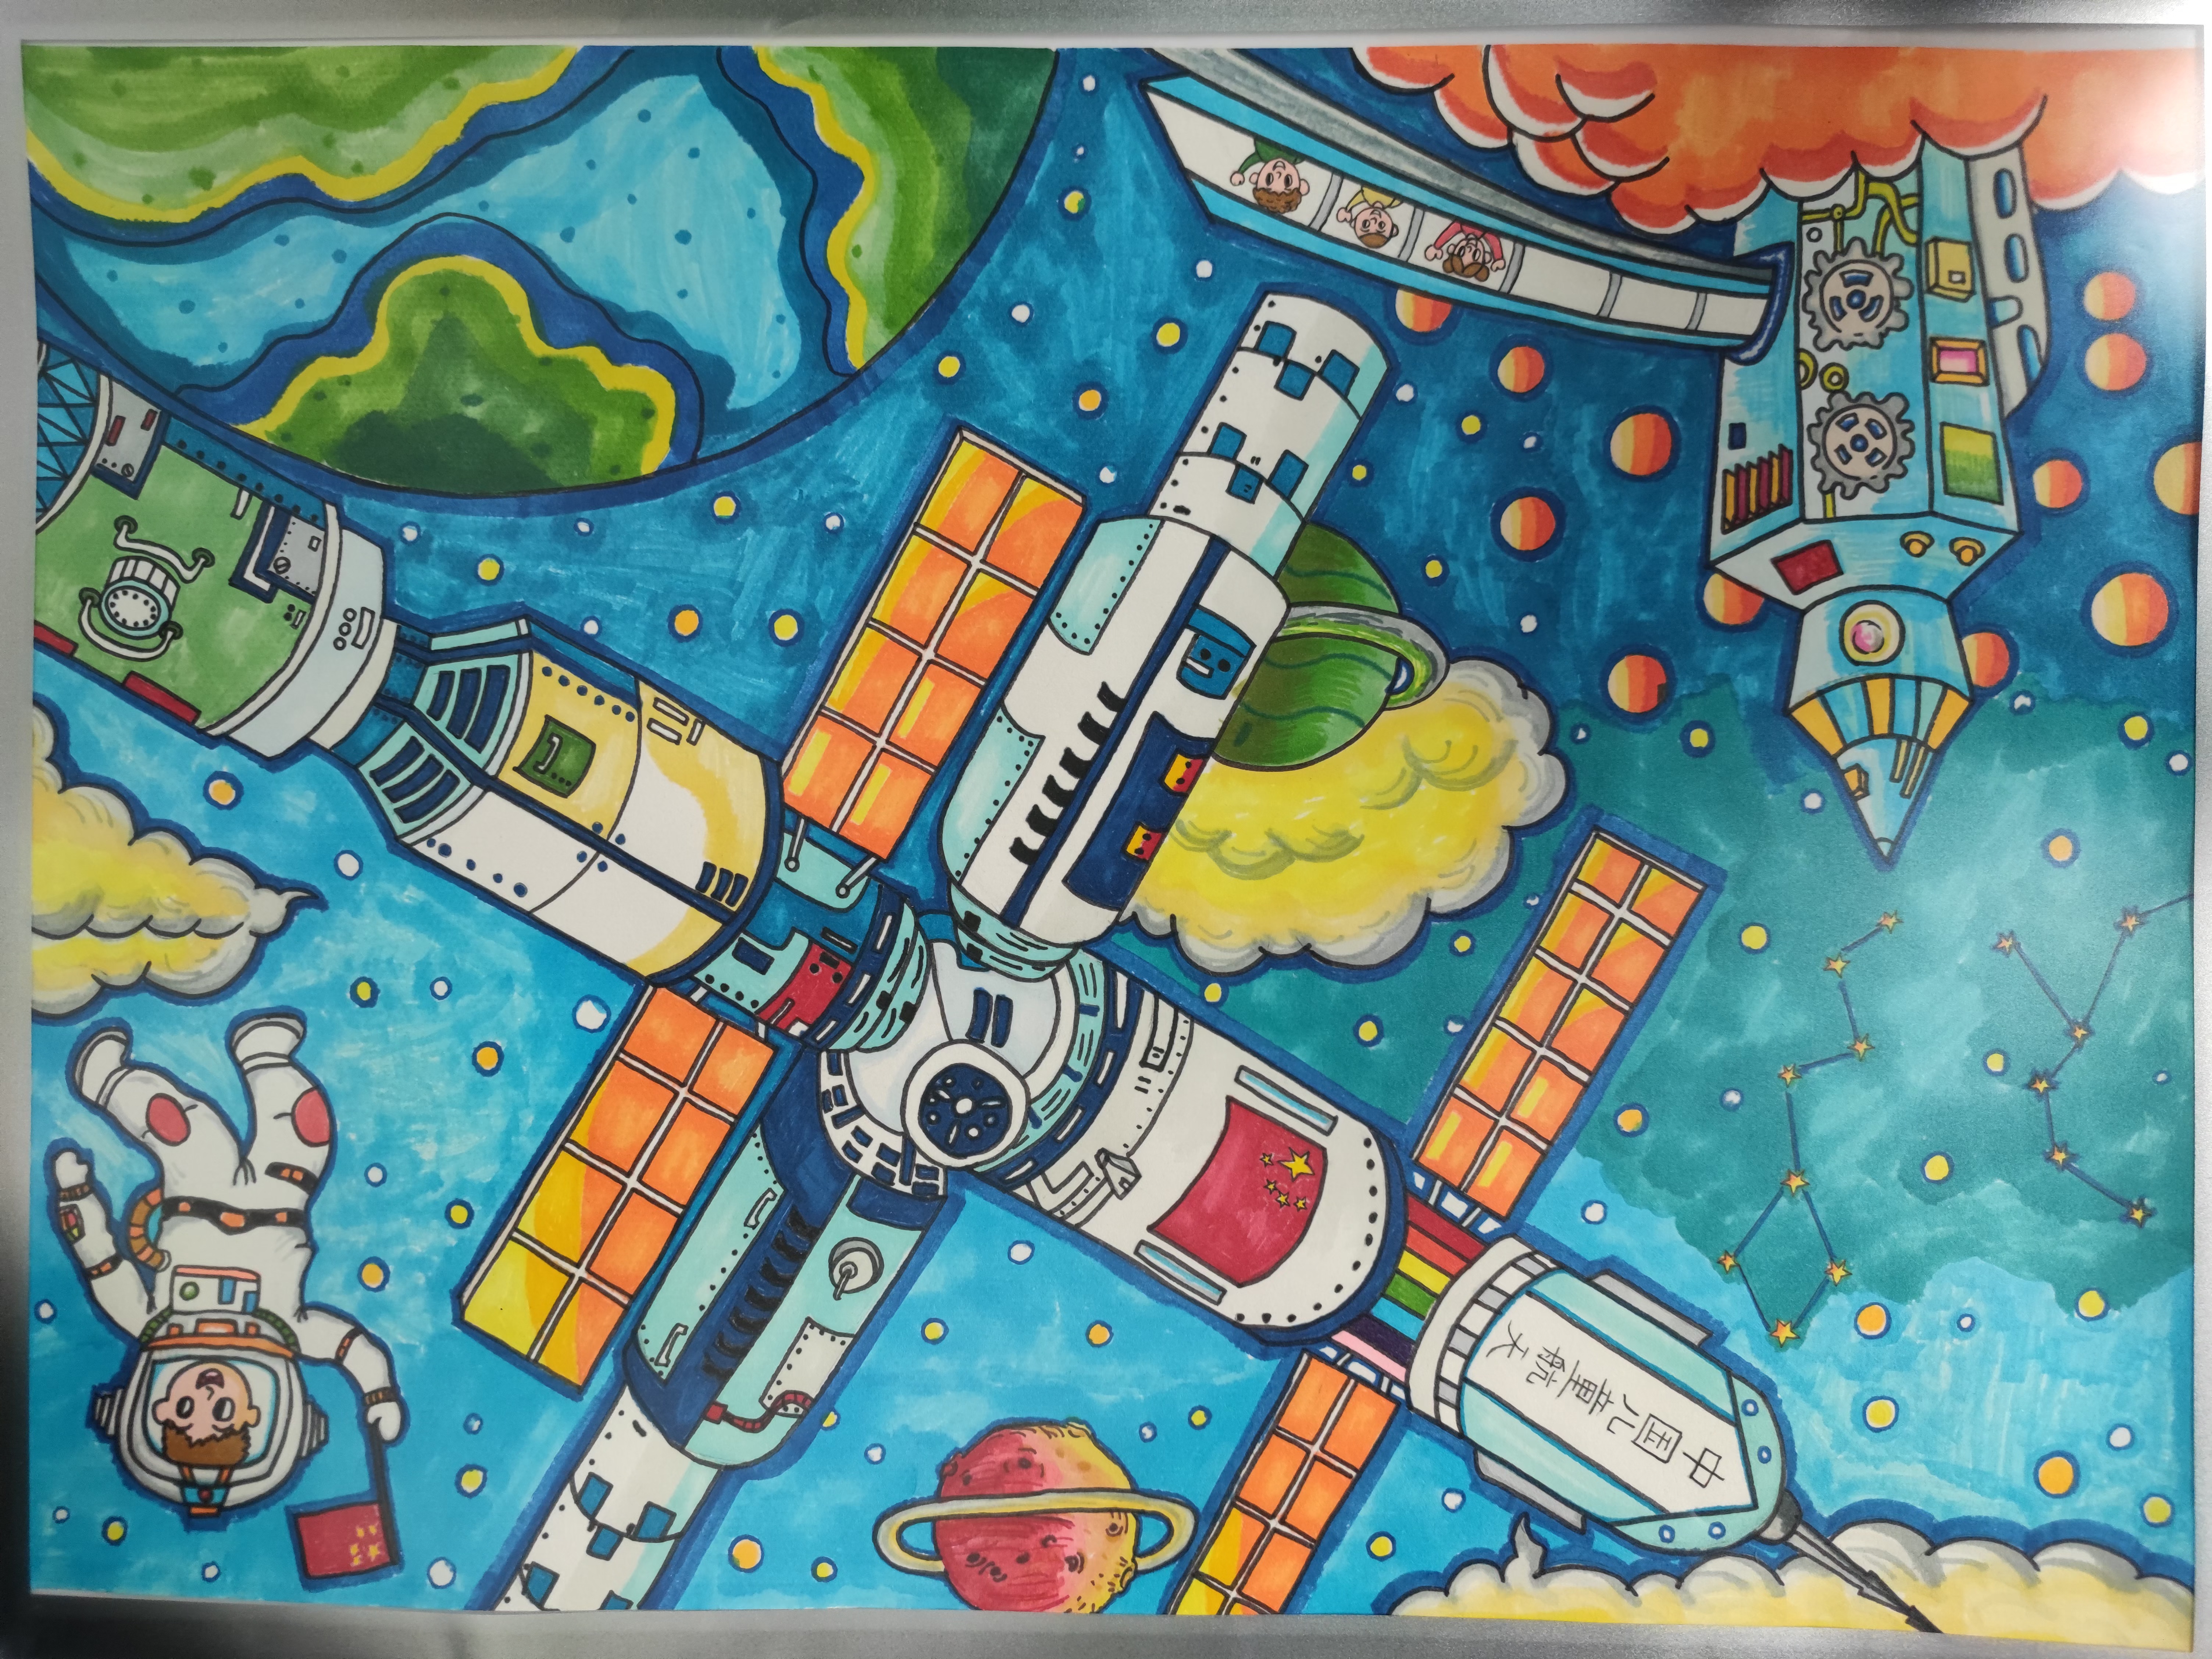 宇宙空间站儿童画获奖图片